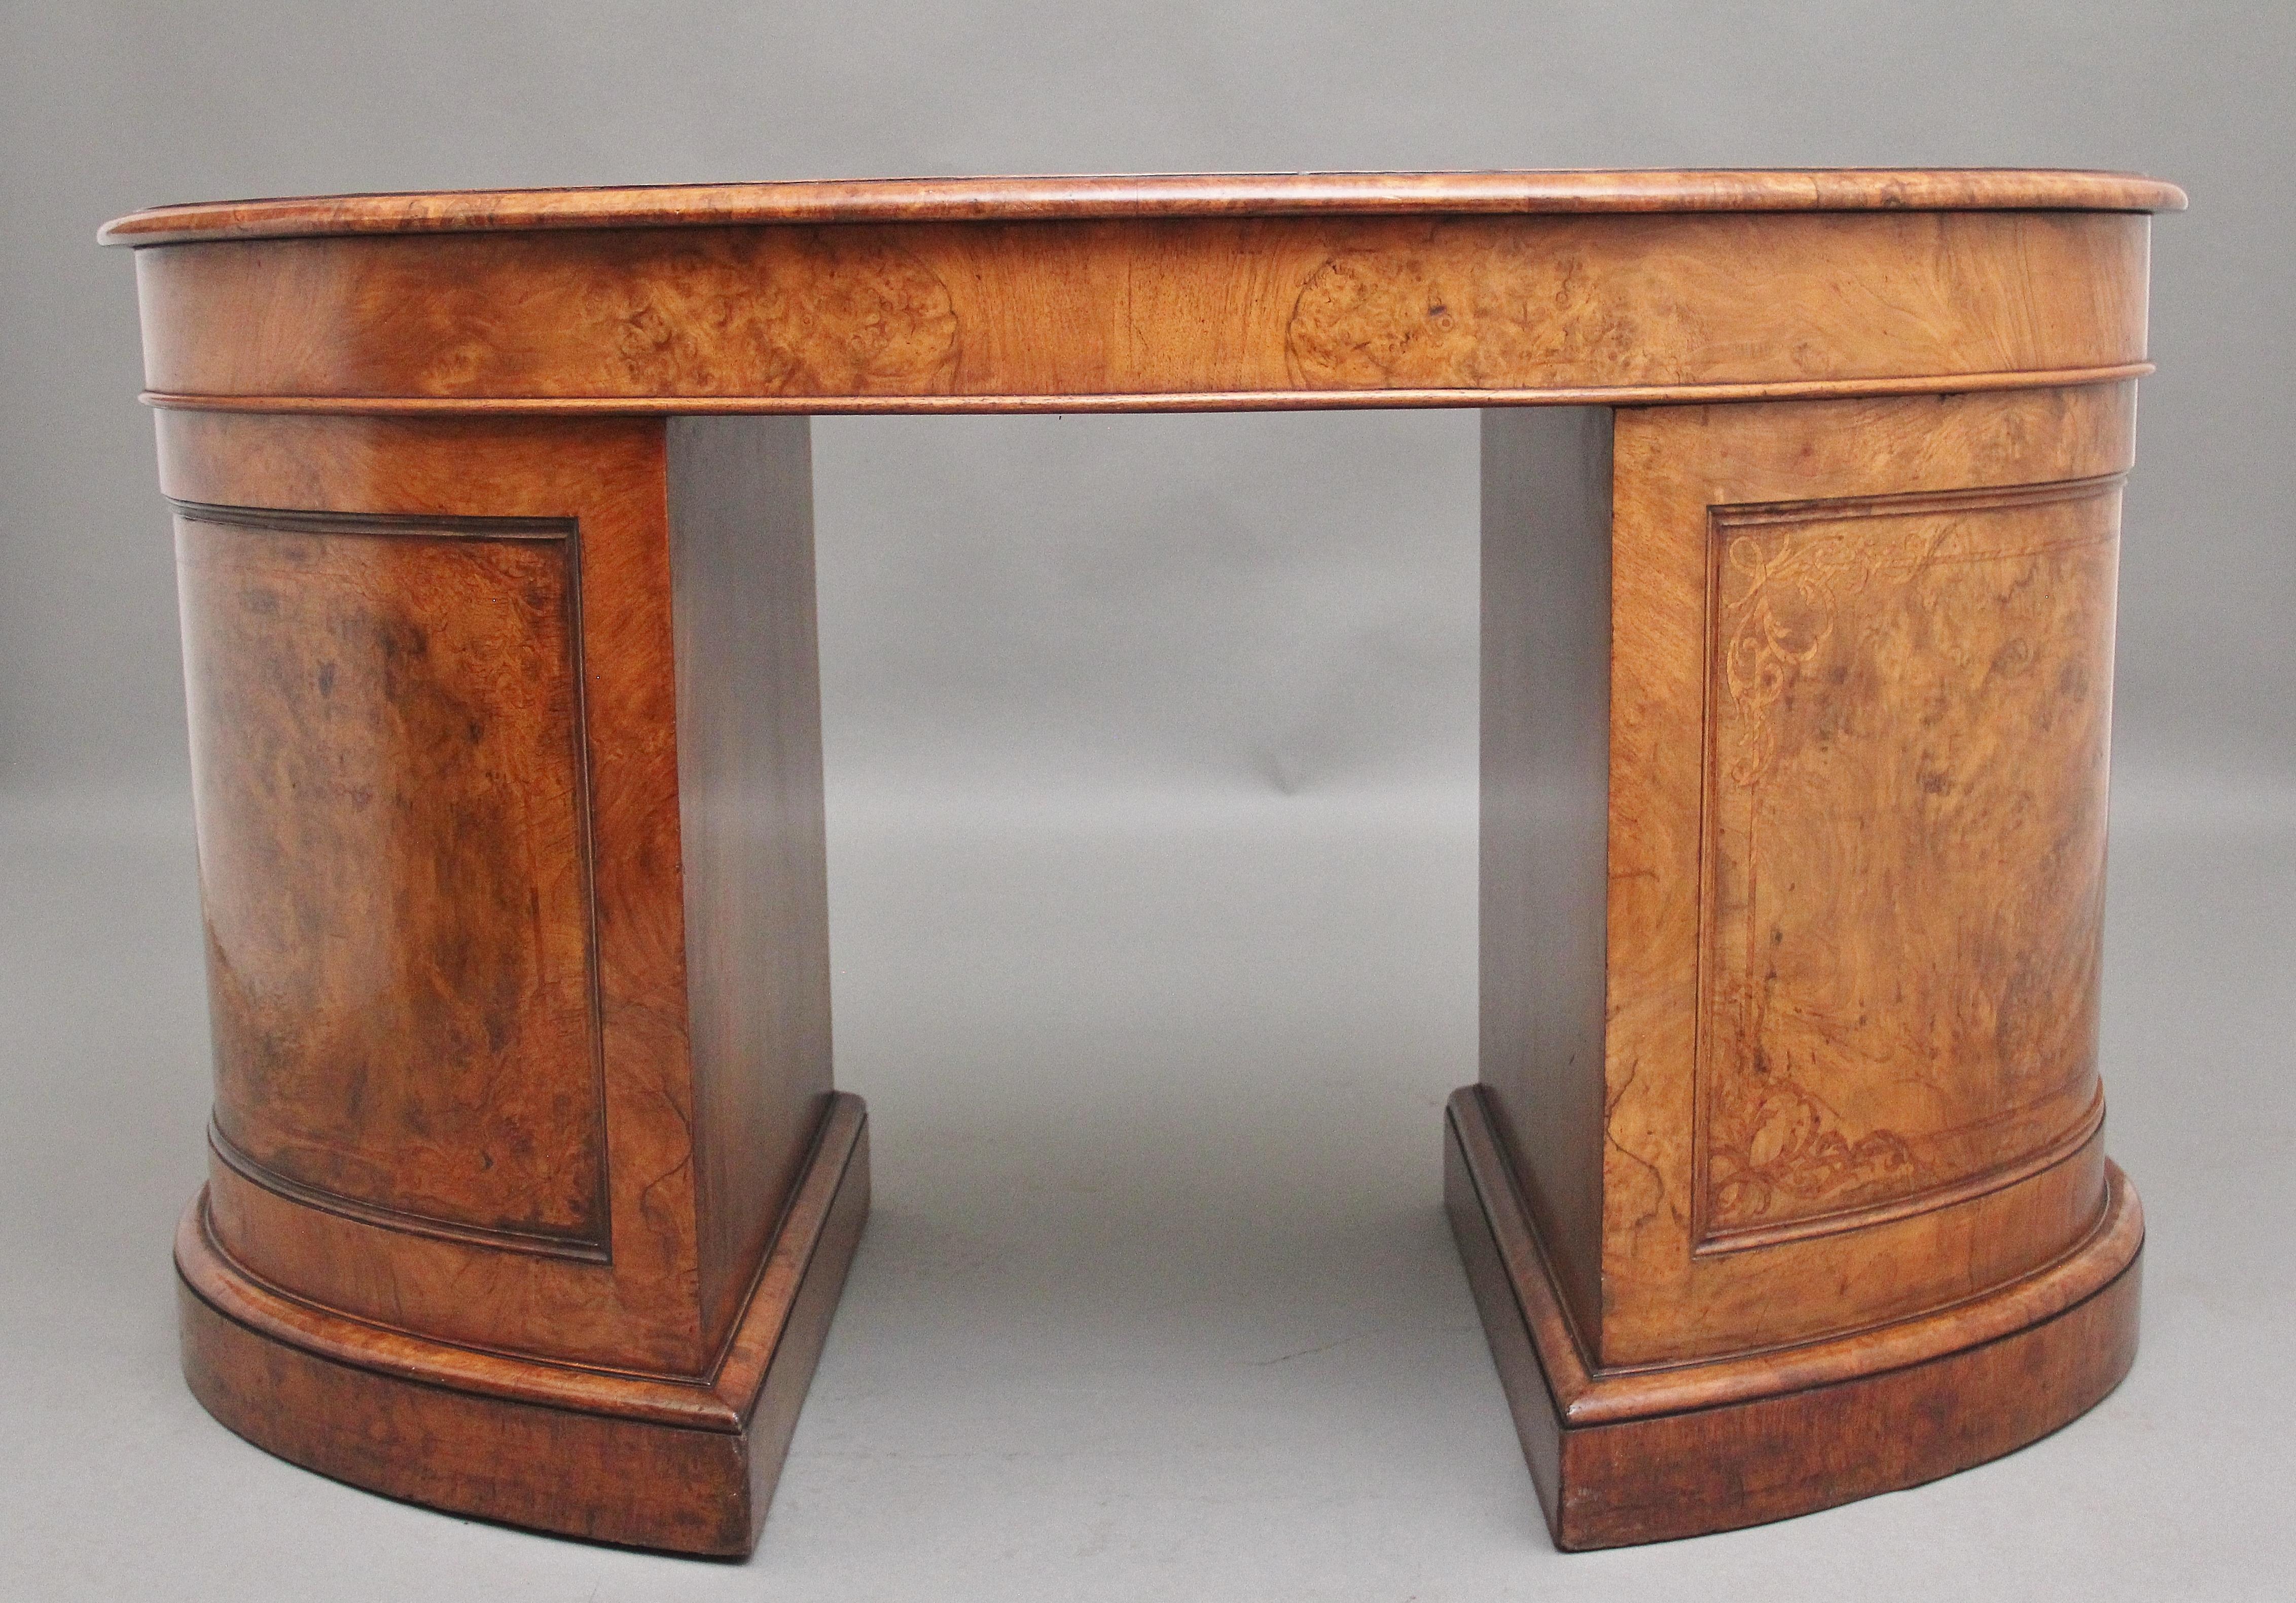 British 19th Century burr walnut pedestal kidney shaped desk